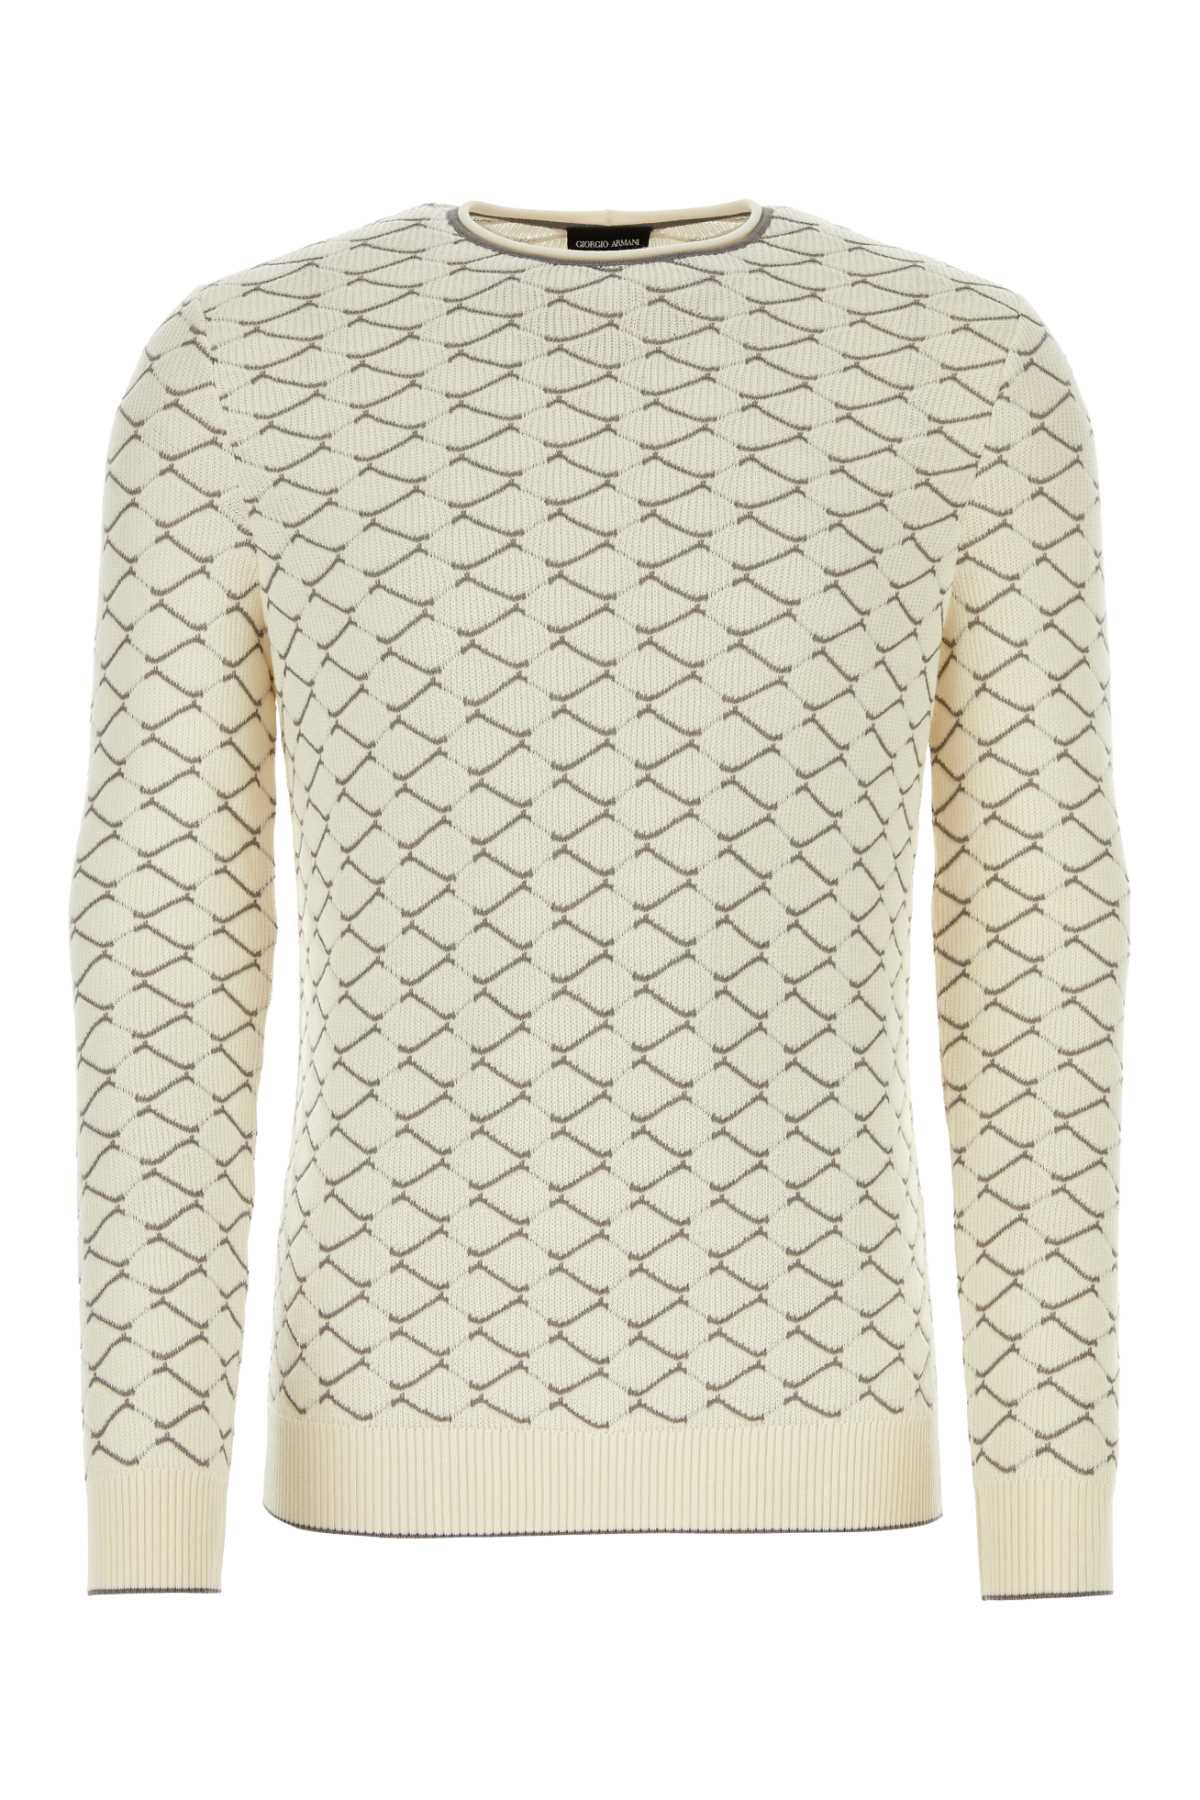 Shop Giorgio Armani Ivory Cotton Blend Sweater In Gesso